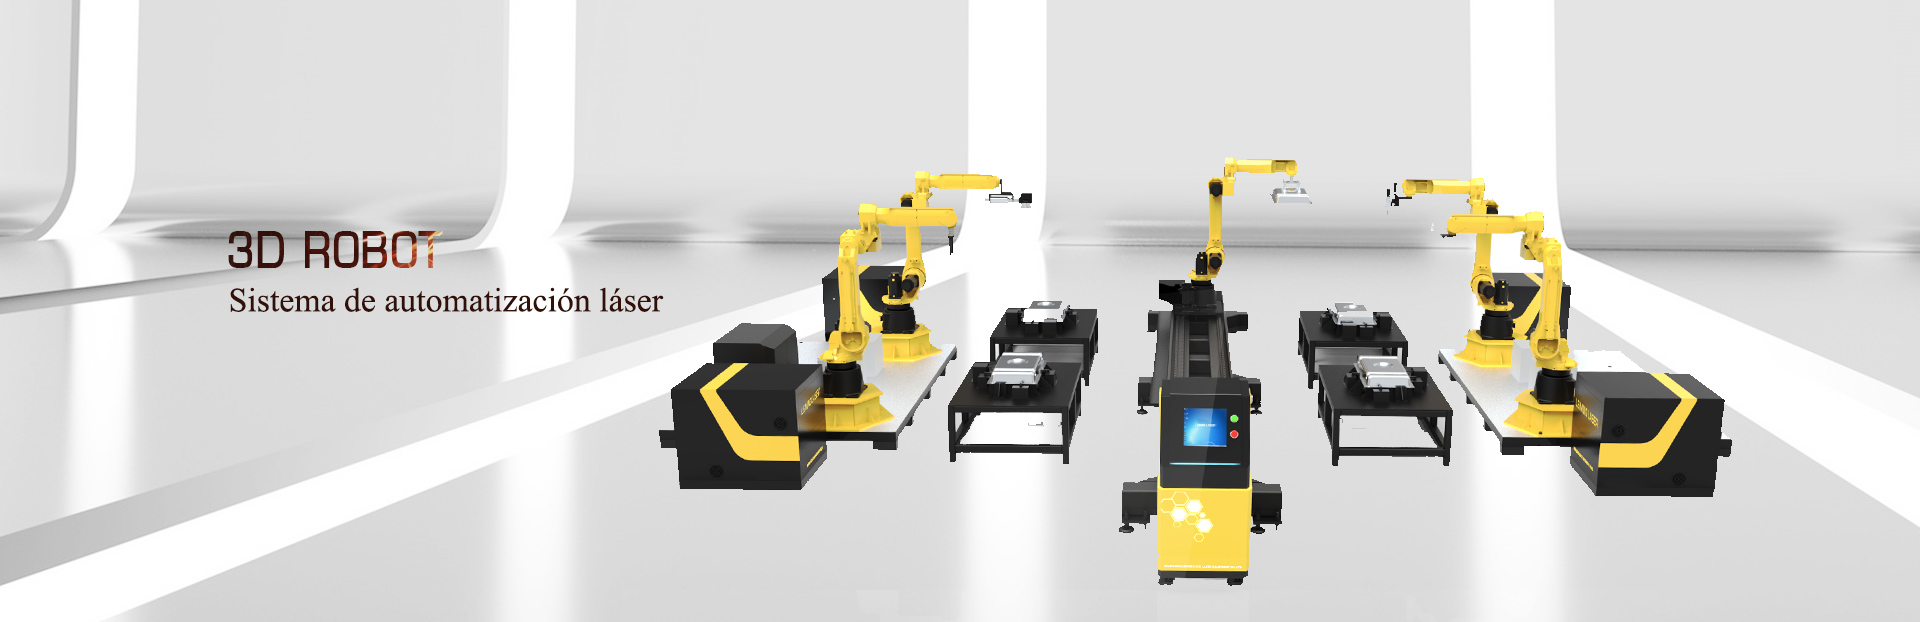 Sistema de automatización láser 3D robot